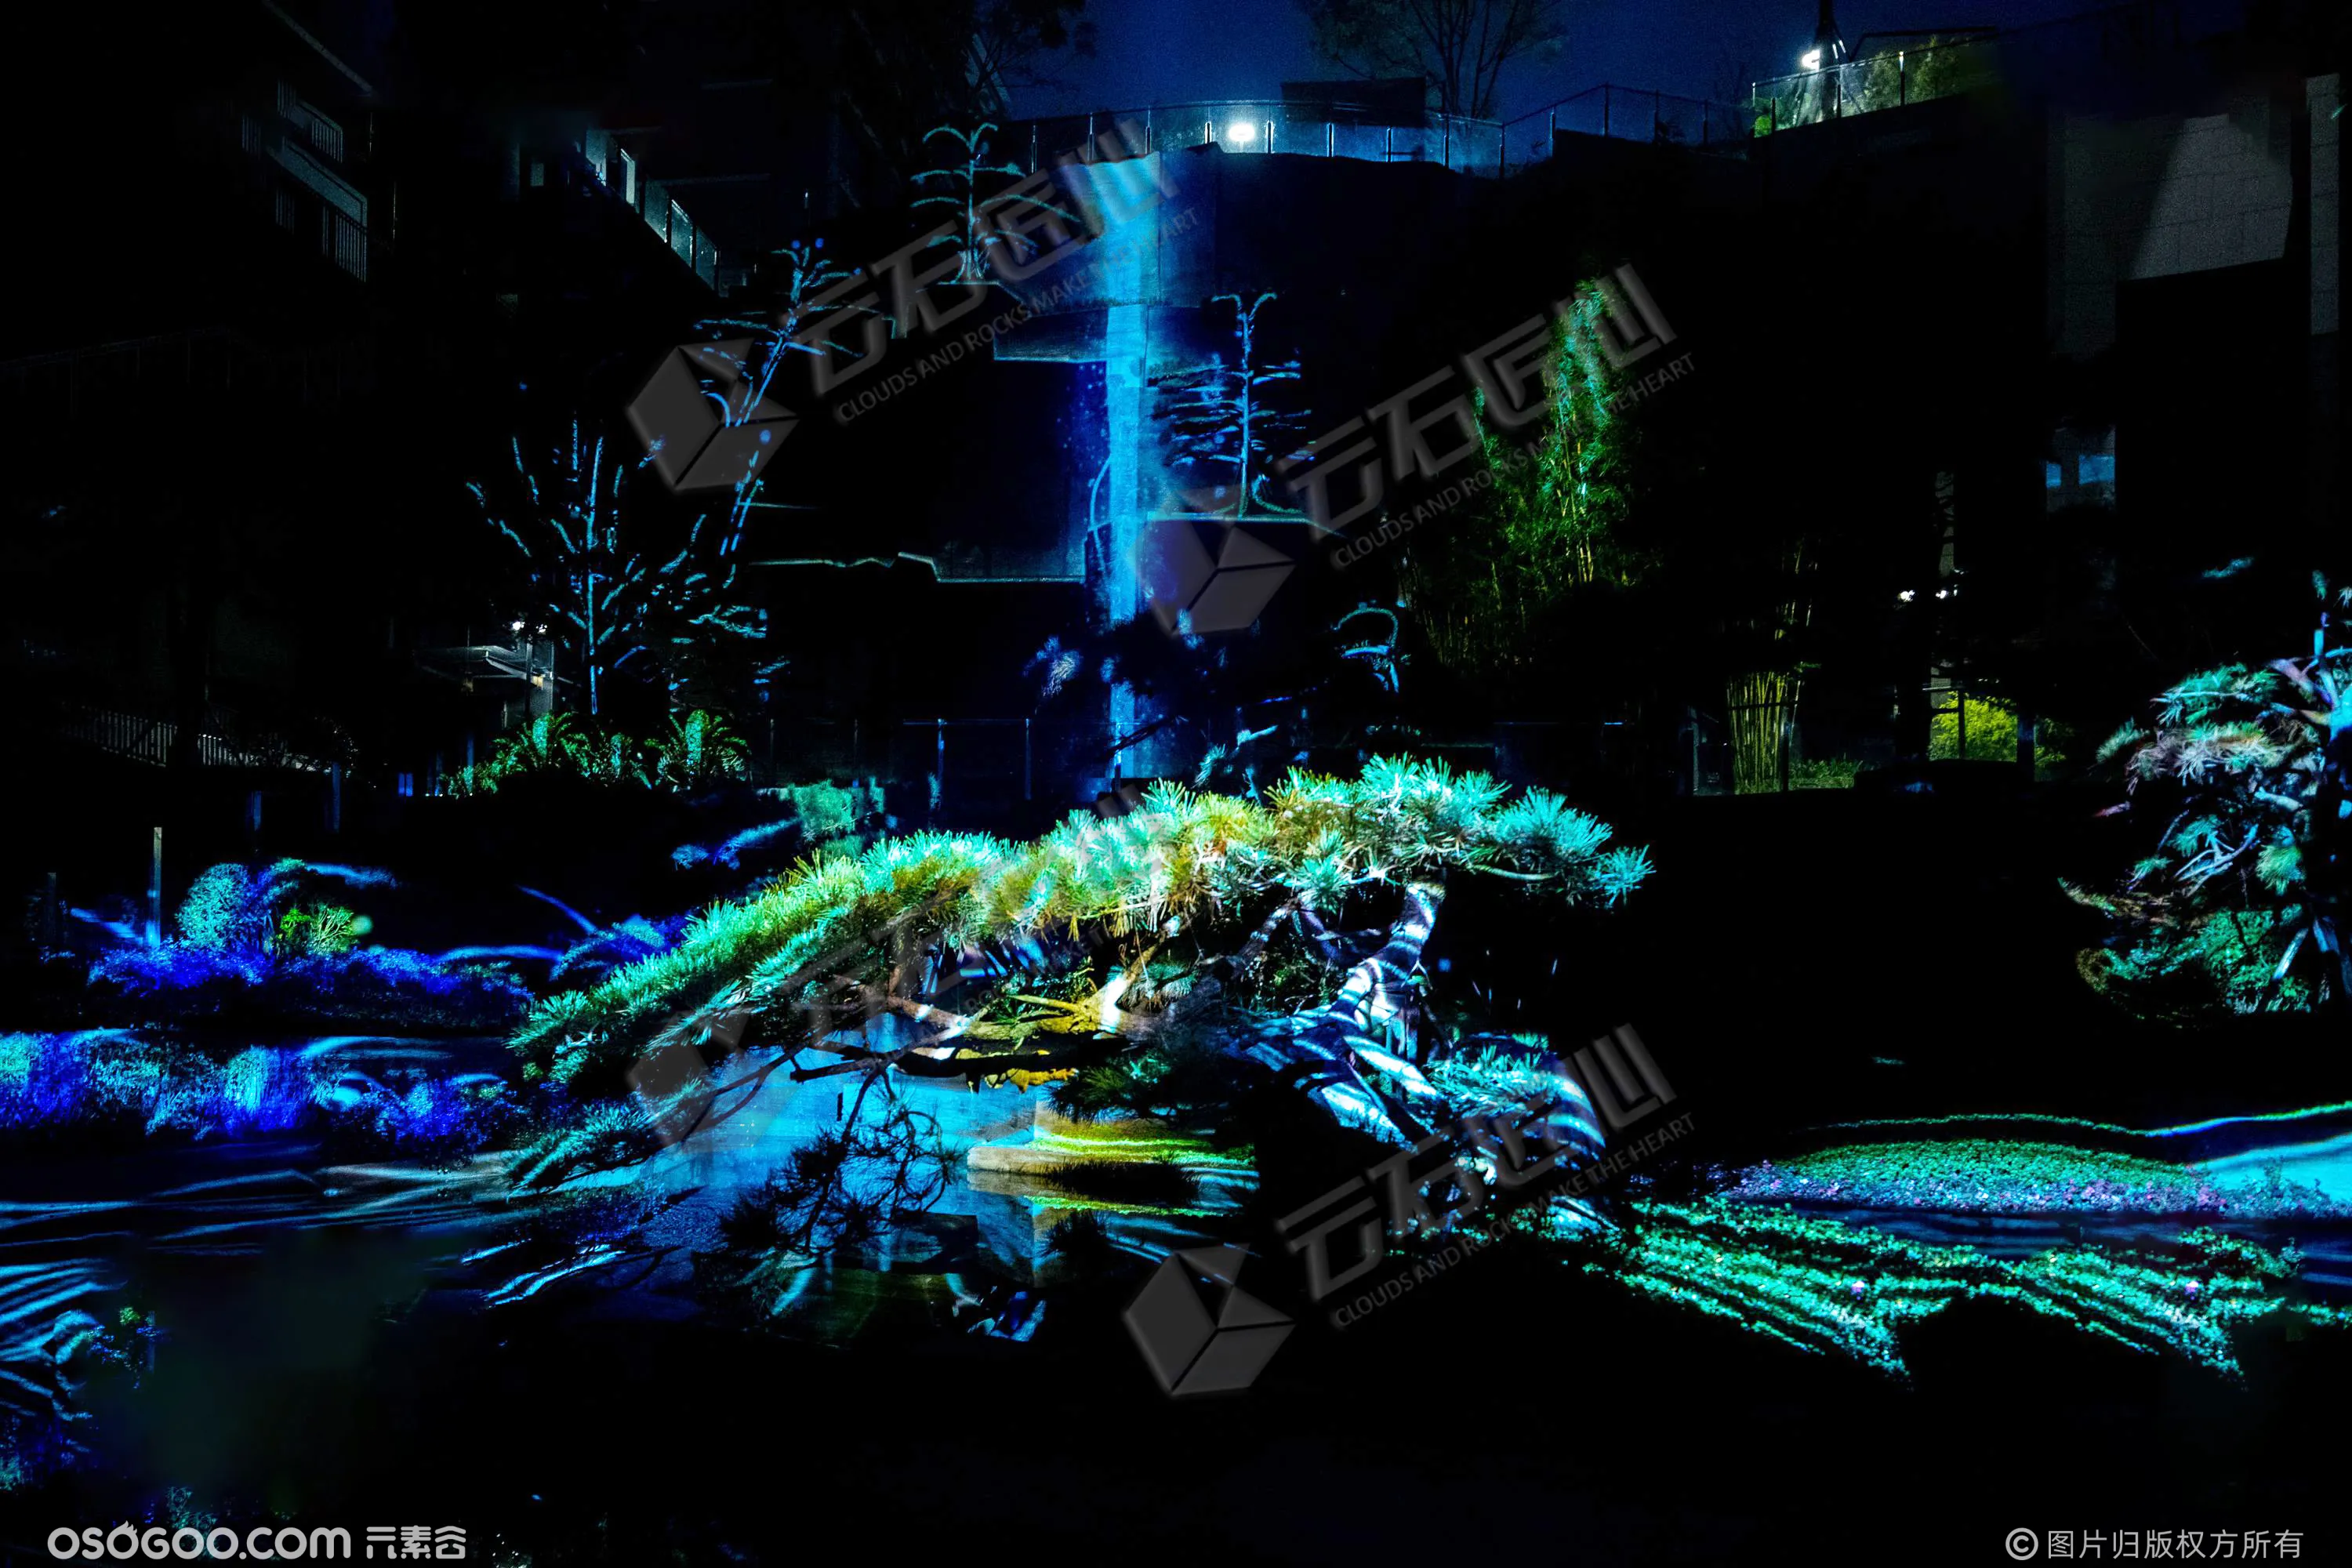 4D飞瀑园林 沉浸式山体夜游艺术光影秀